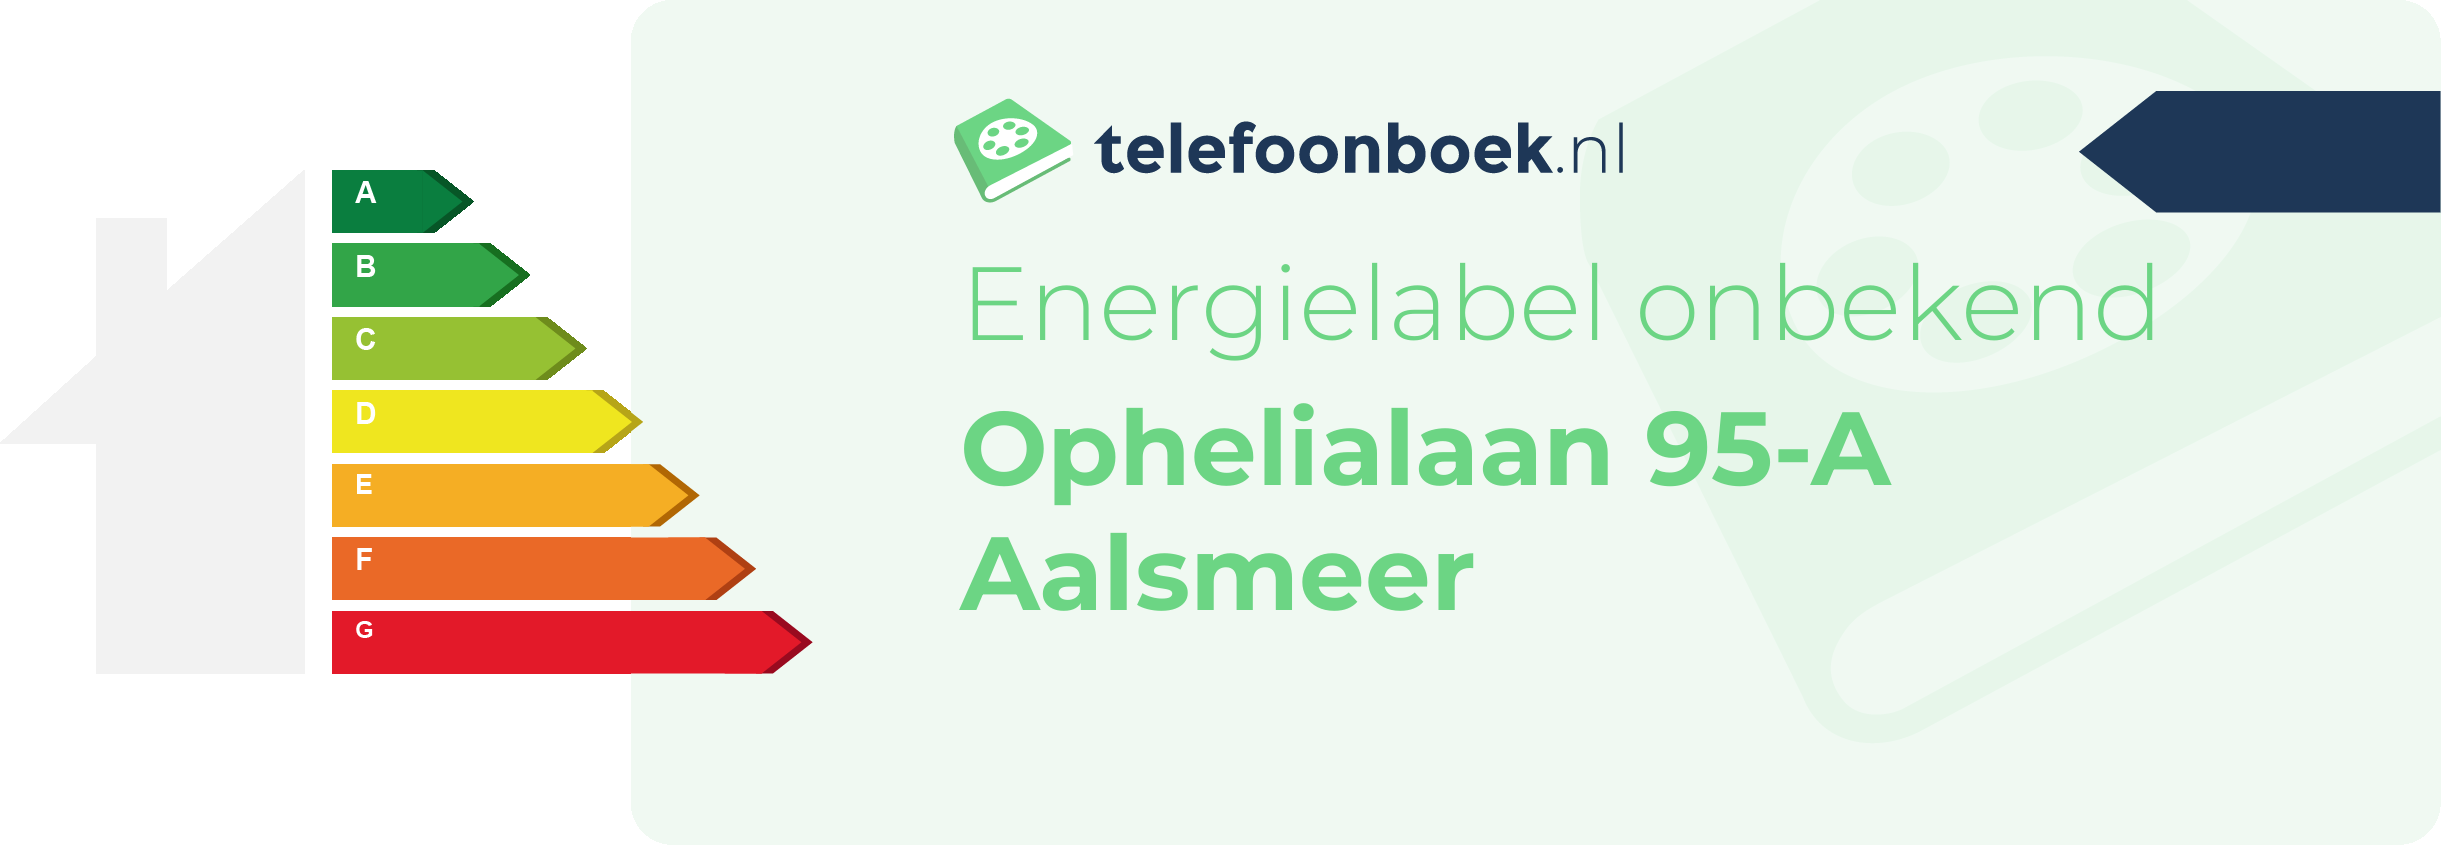 Energielabel Ophelialaan 95-A Aalsmeer